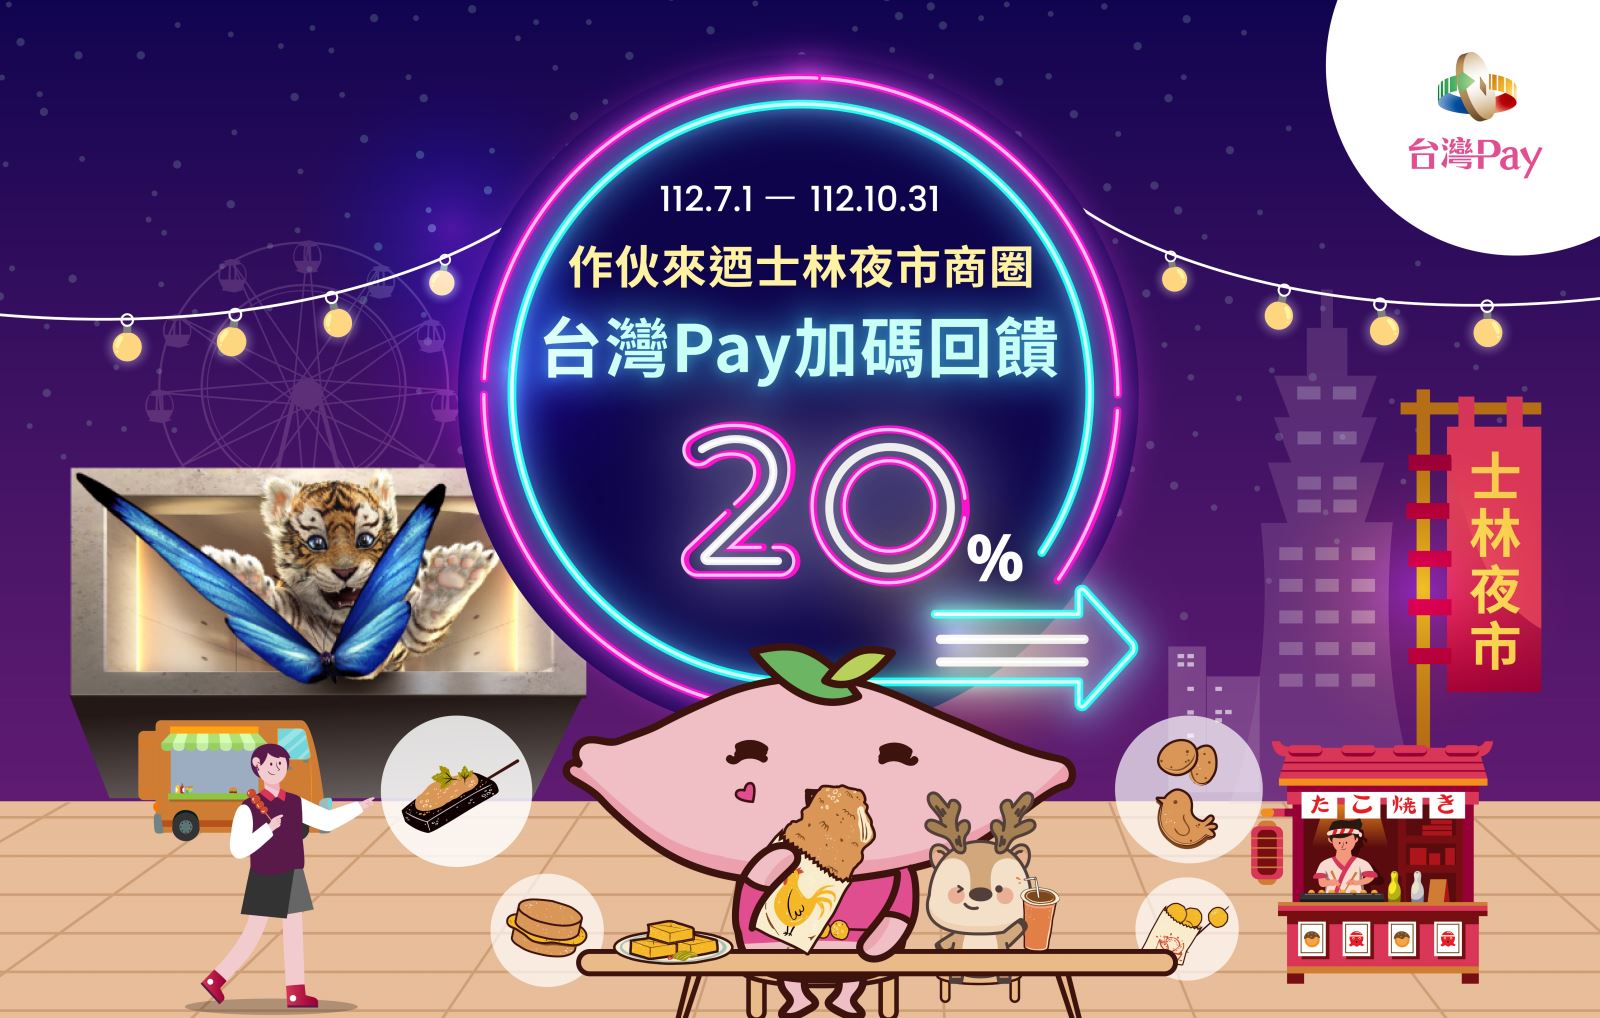 作伙來迺士林夜市商圈 台灣Pay加碼20%回饋，以「台灣Pay」QR Code掃碼支付，單筆消費不限金額可享20%現金回饋